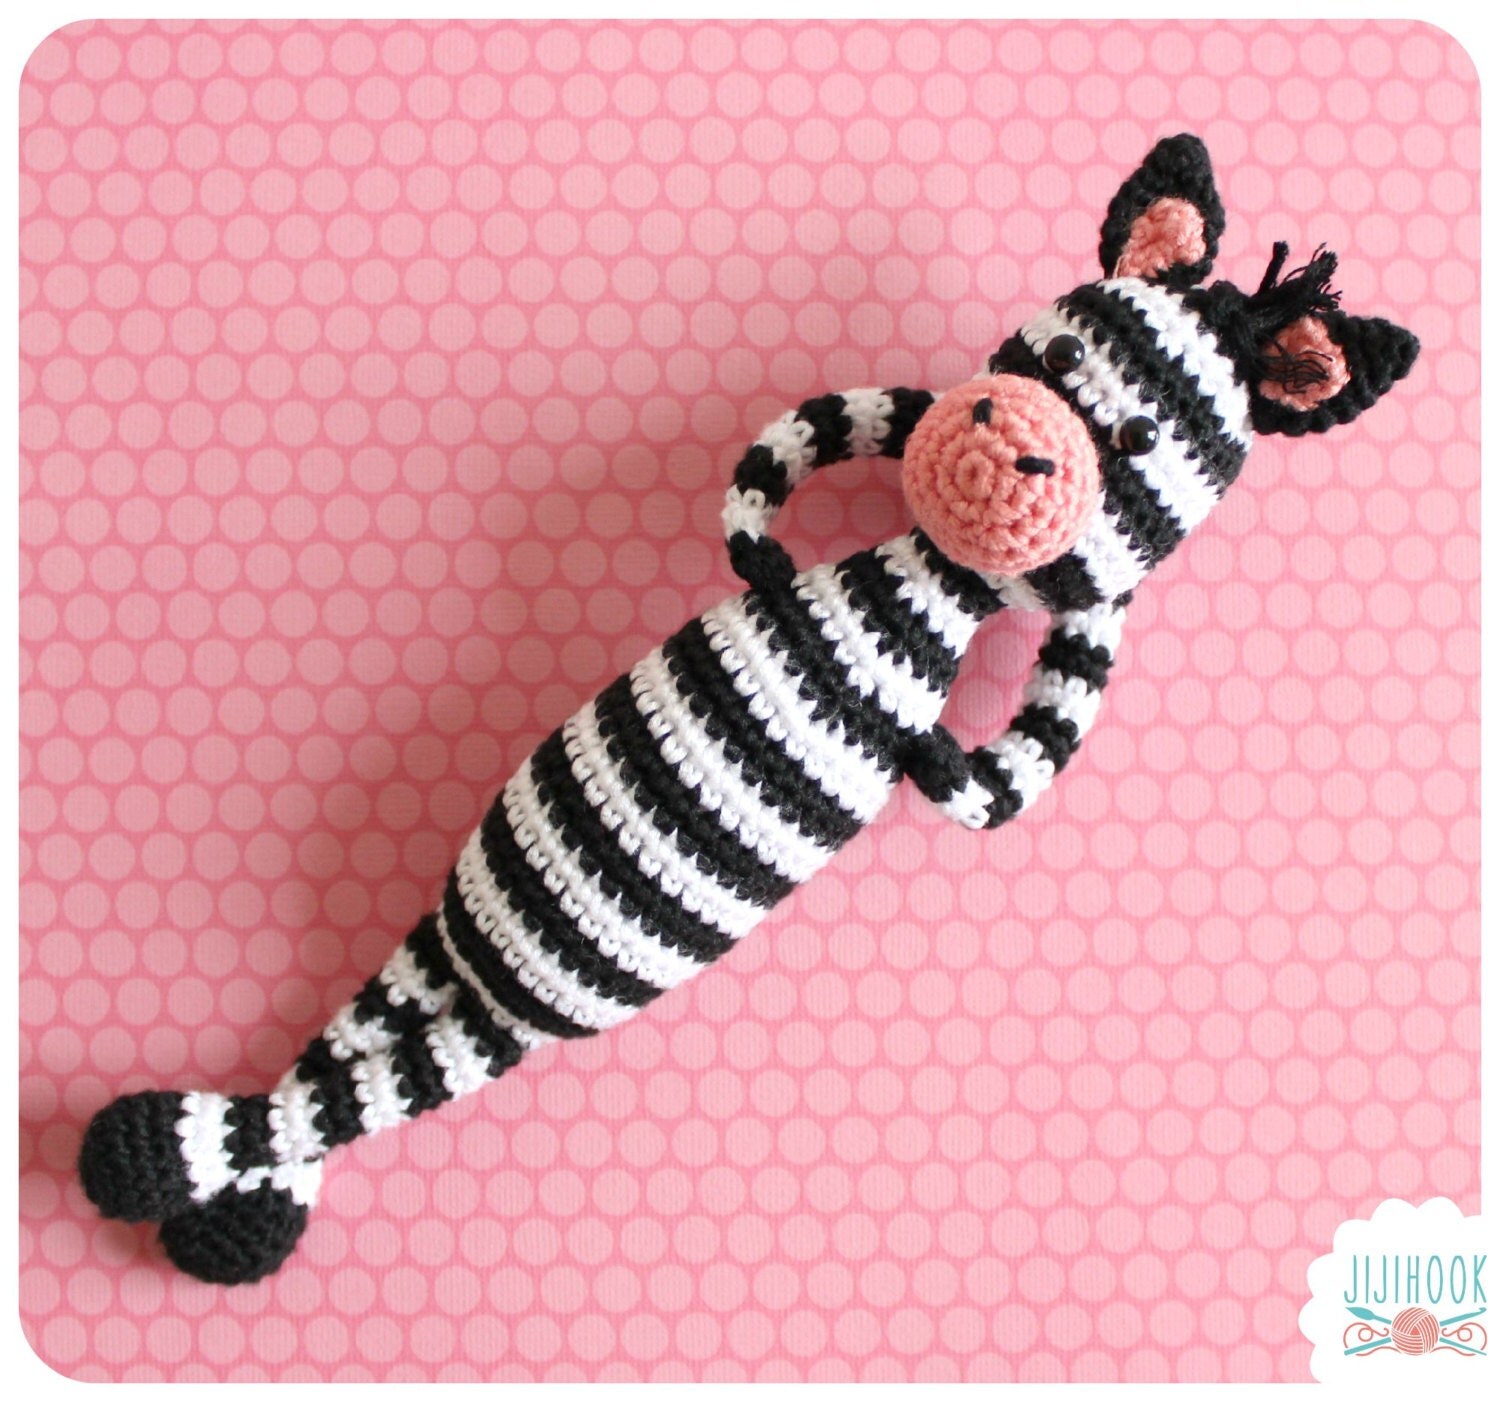 pattern baby zebra crochet blanket PDF Jijihook Crochet Instant Zebra Pattern Download from